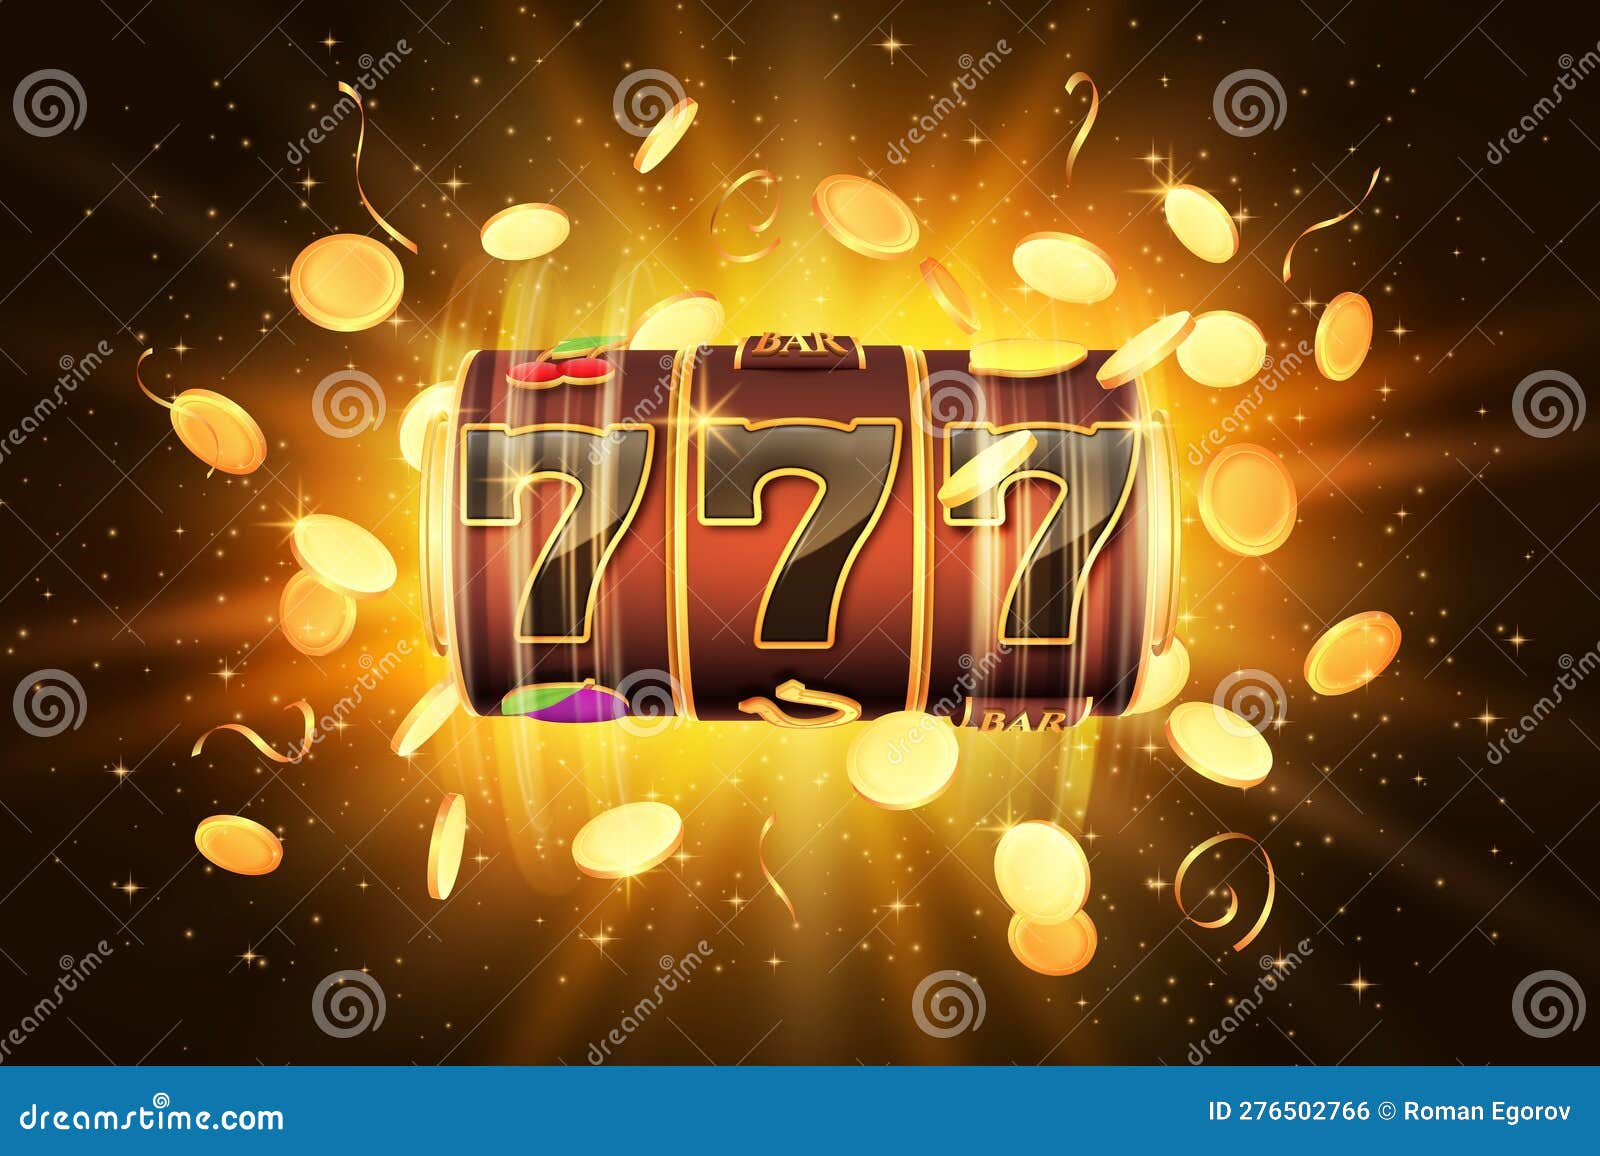 Publicidade do casino 777 online, dois dados de jogo de casino, moedas de  ouro, grande vitória, excitação, prêmio, prazer